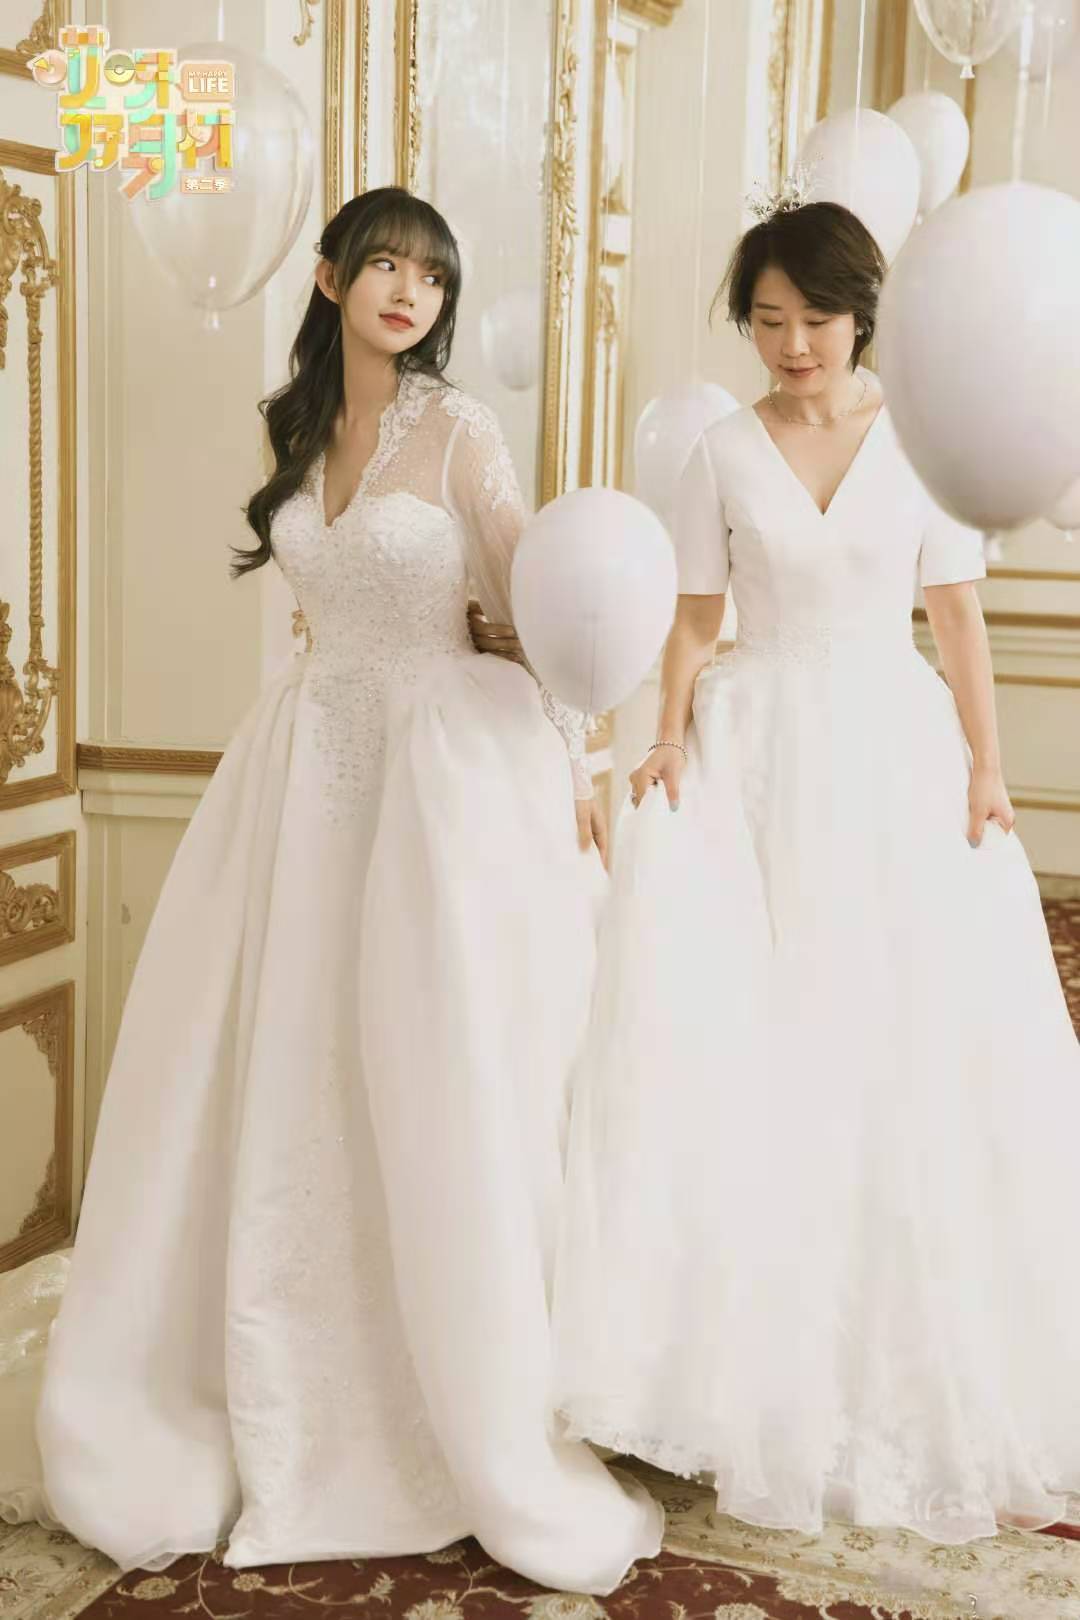 《哎呀好身材2》程潇拍摄超美婚纱照,杨迪给妈妈惊喜补办婚礼